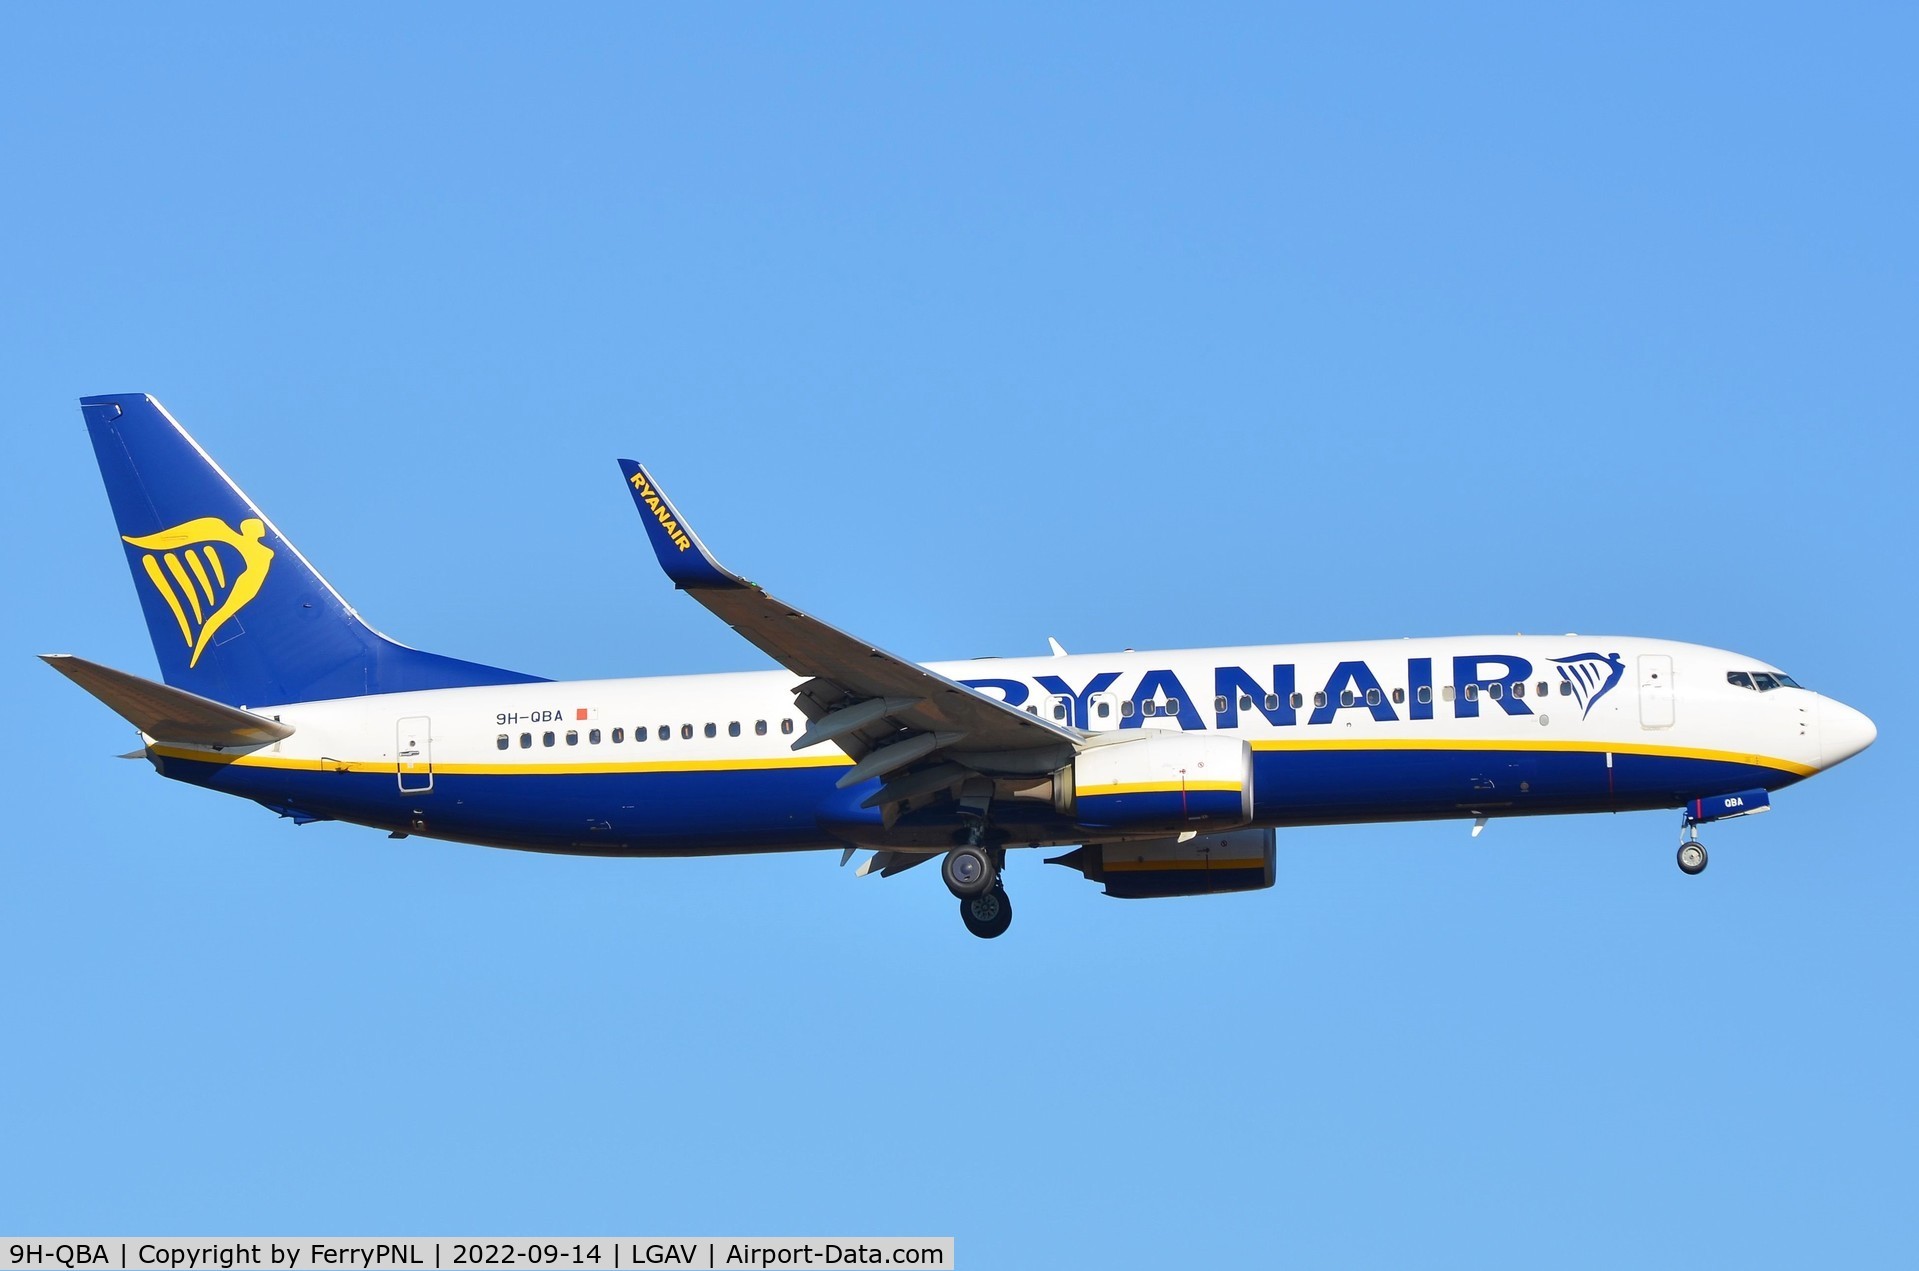 9H-QBA, 2017 Boeing 737-800 C/N 44802, Ryanair B738 landing